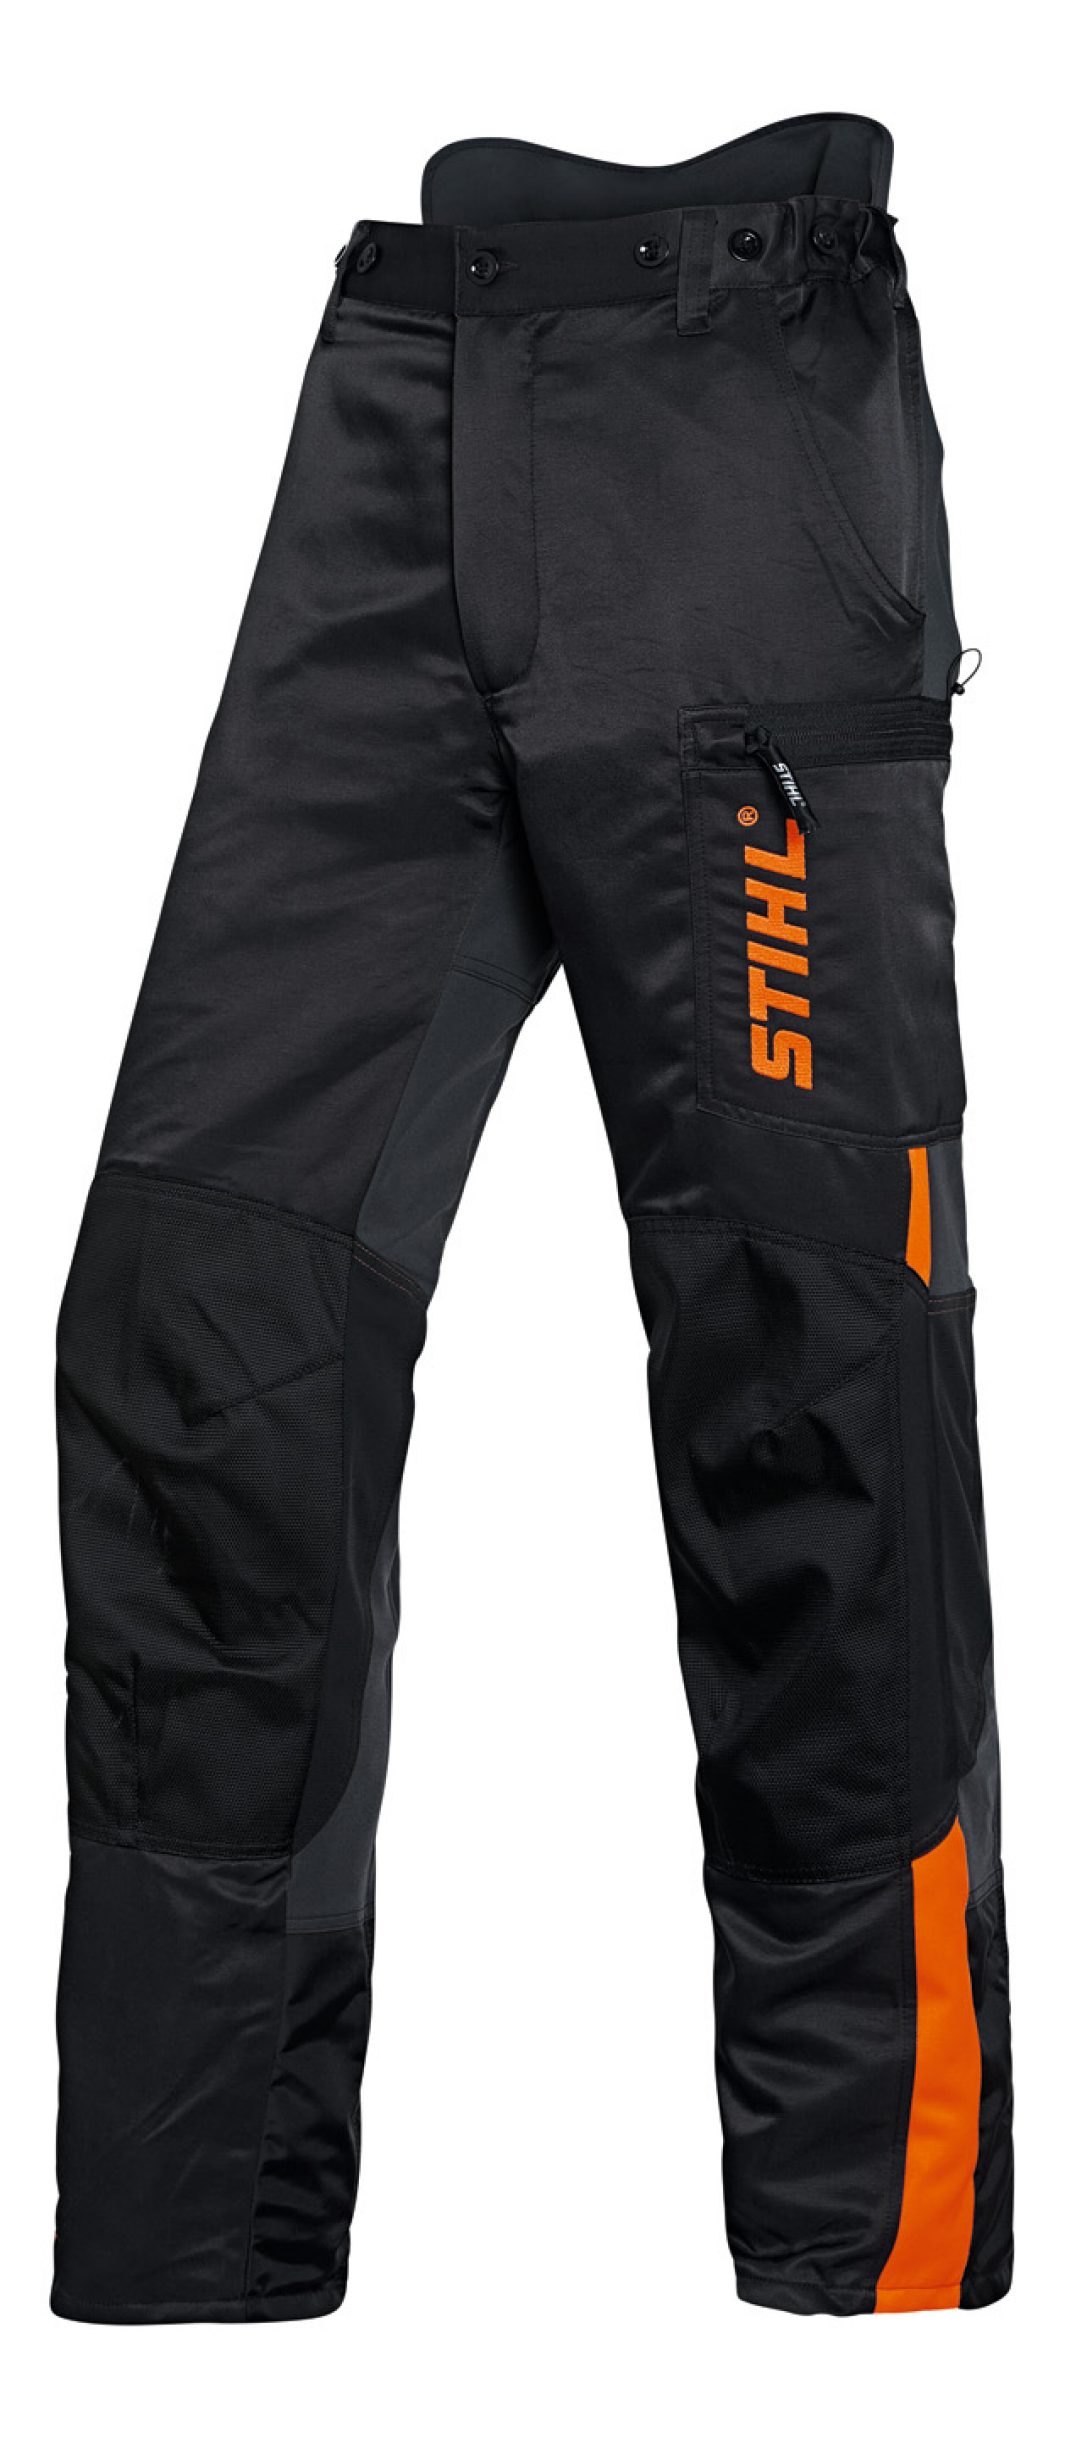 Pantalon Stihl Dynamic A2 anti-coupures